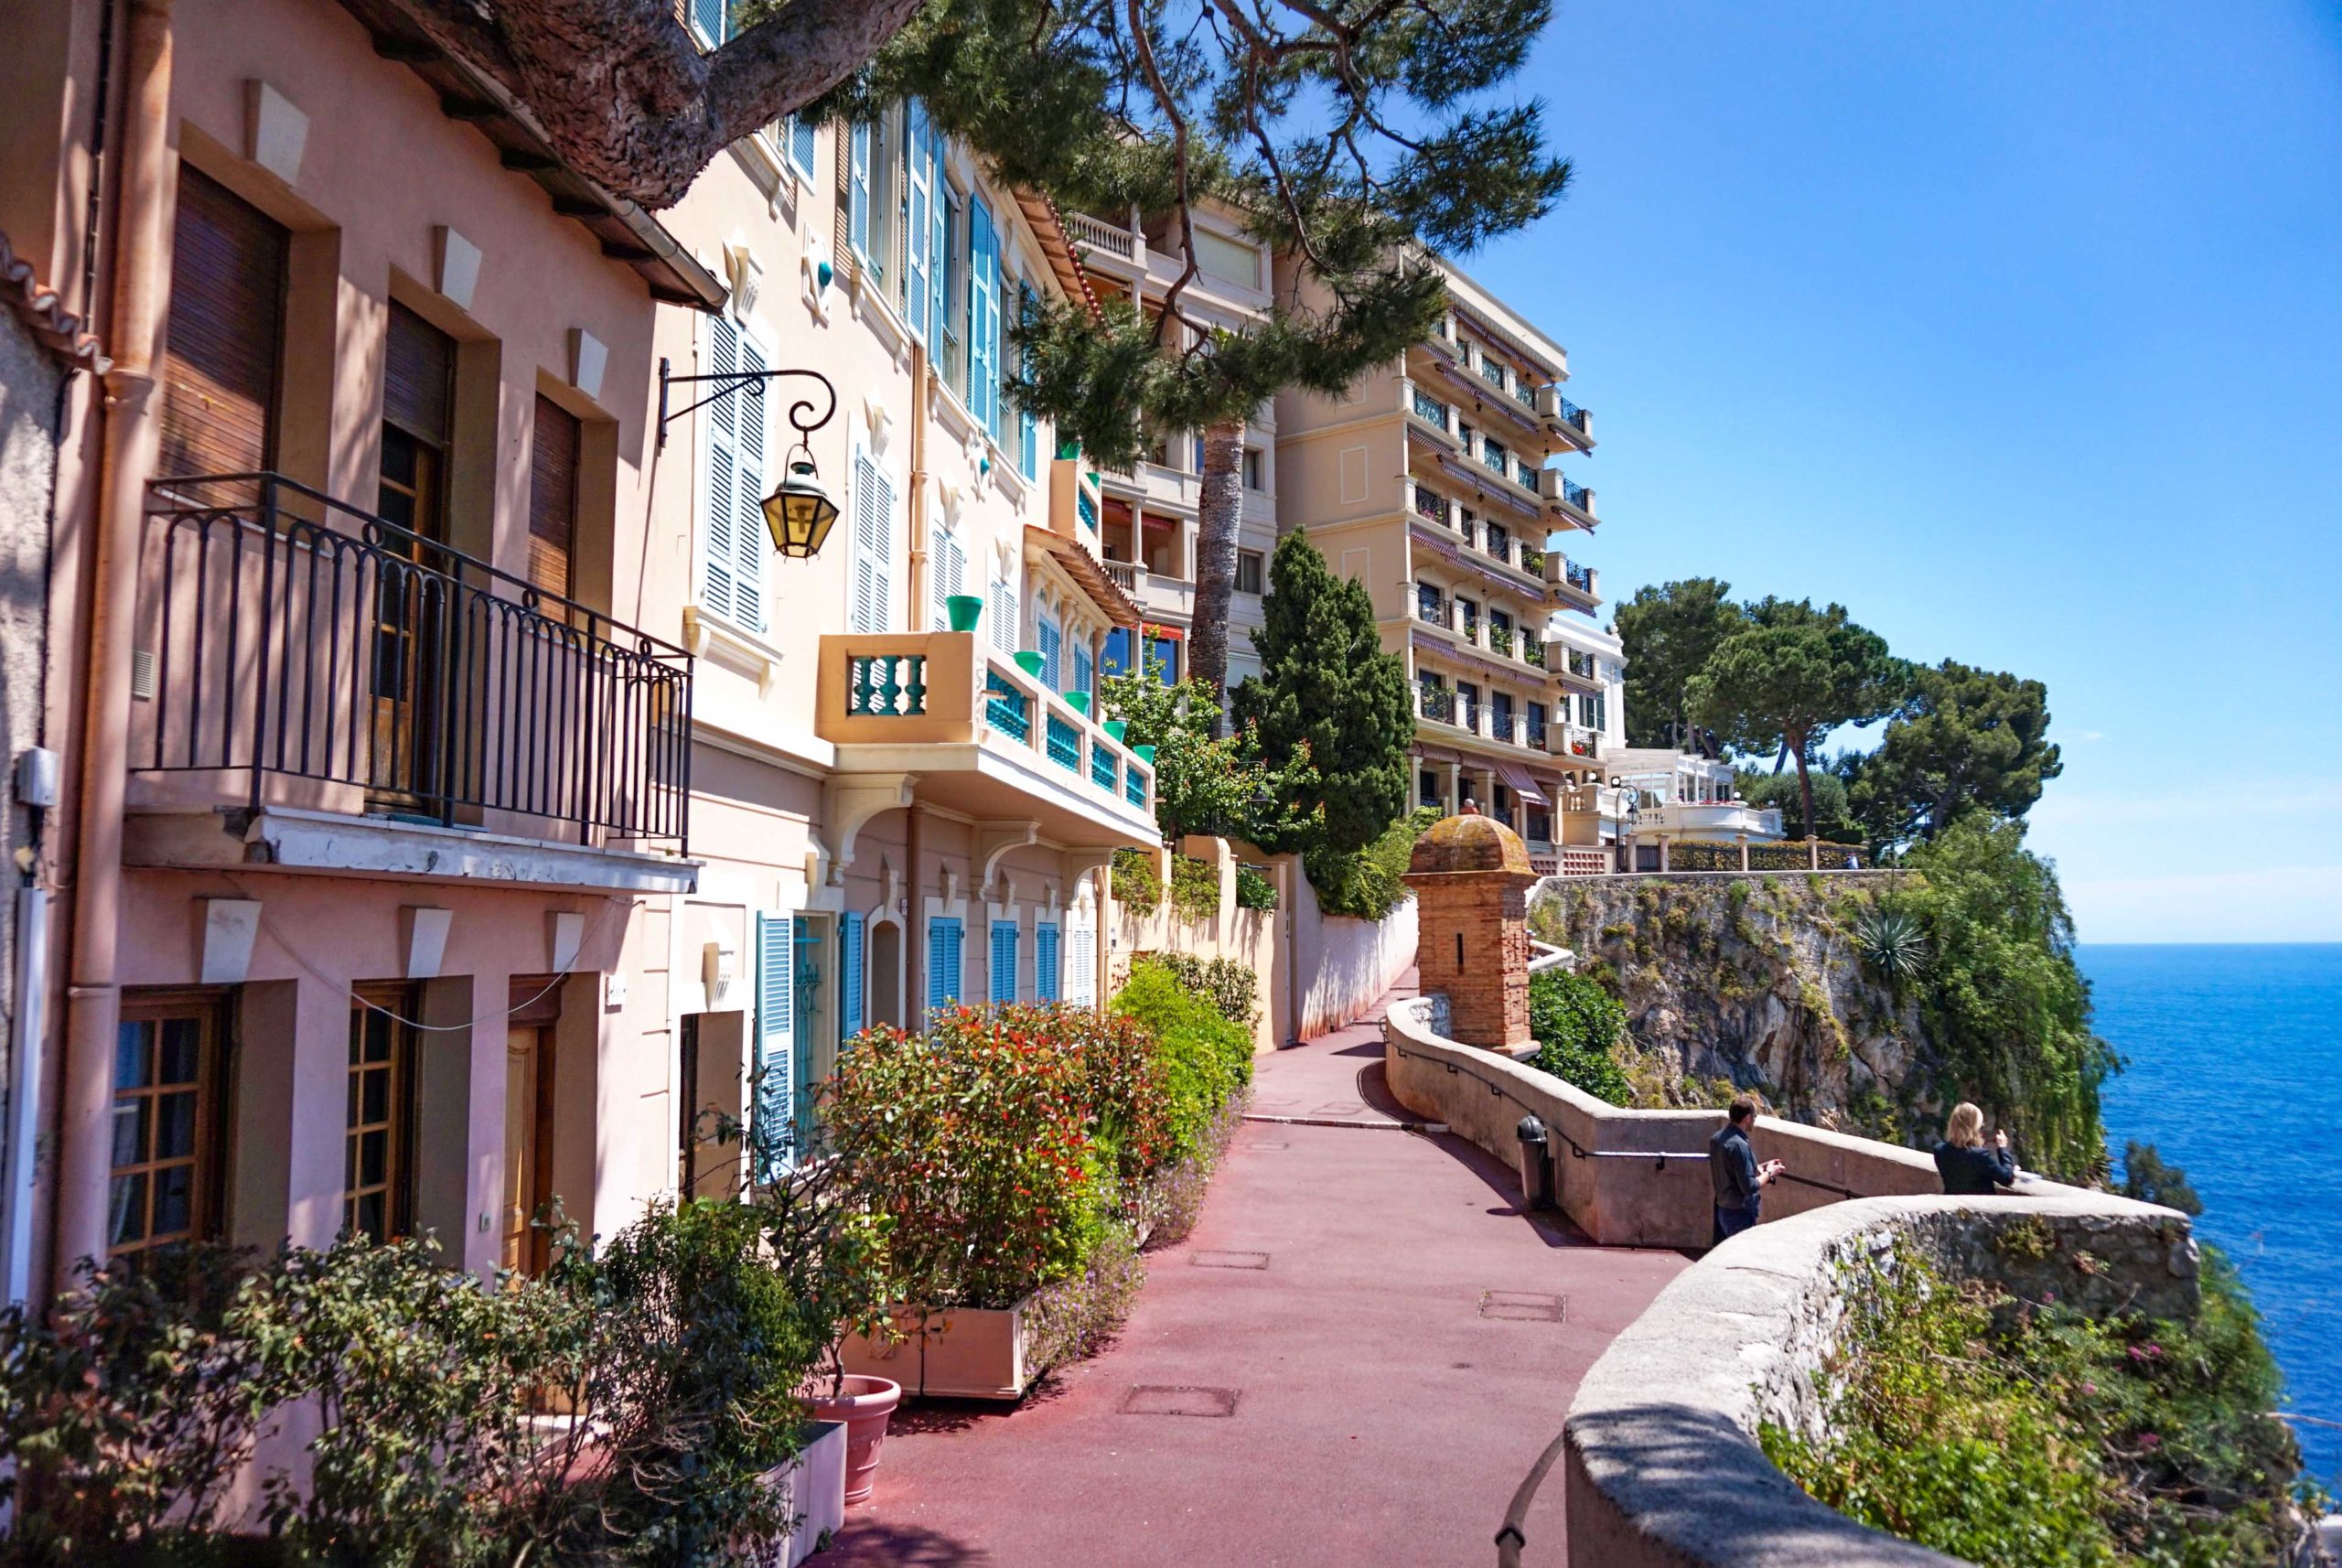 Rocher de Monaco Ruelle Sainte-Barbe © Tiia Monto - licence [CC BY-SA 3.0] from Wikimedia Commons